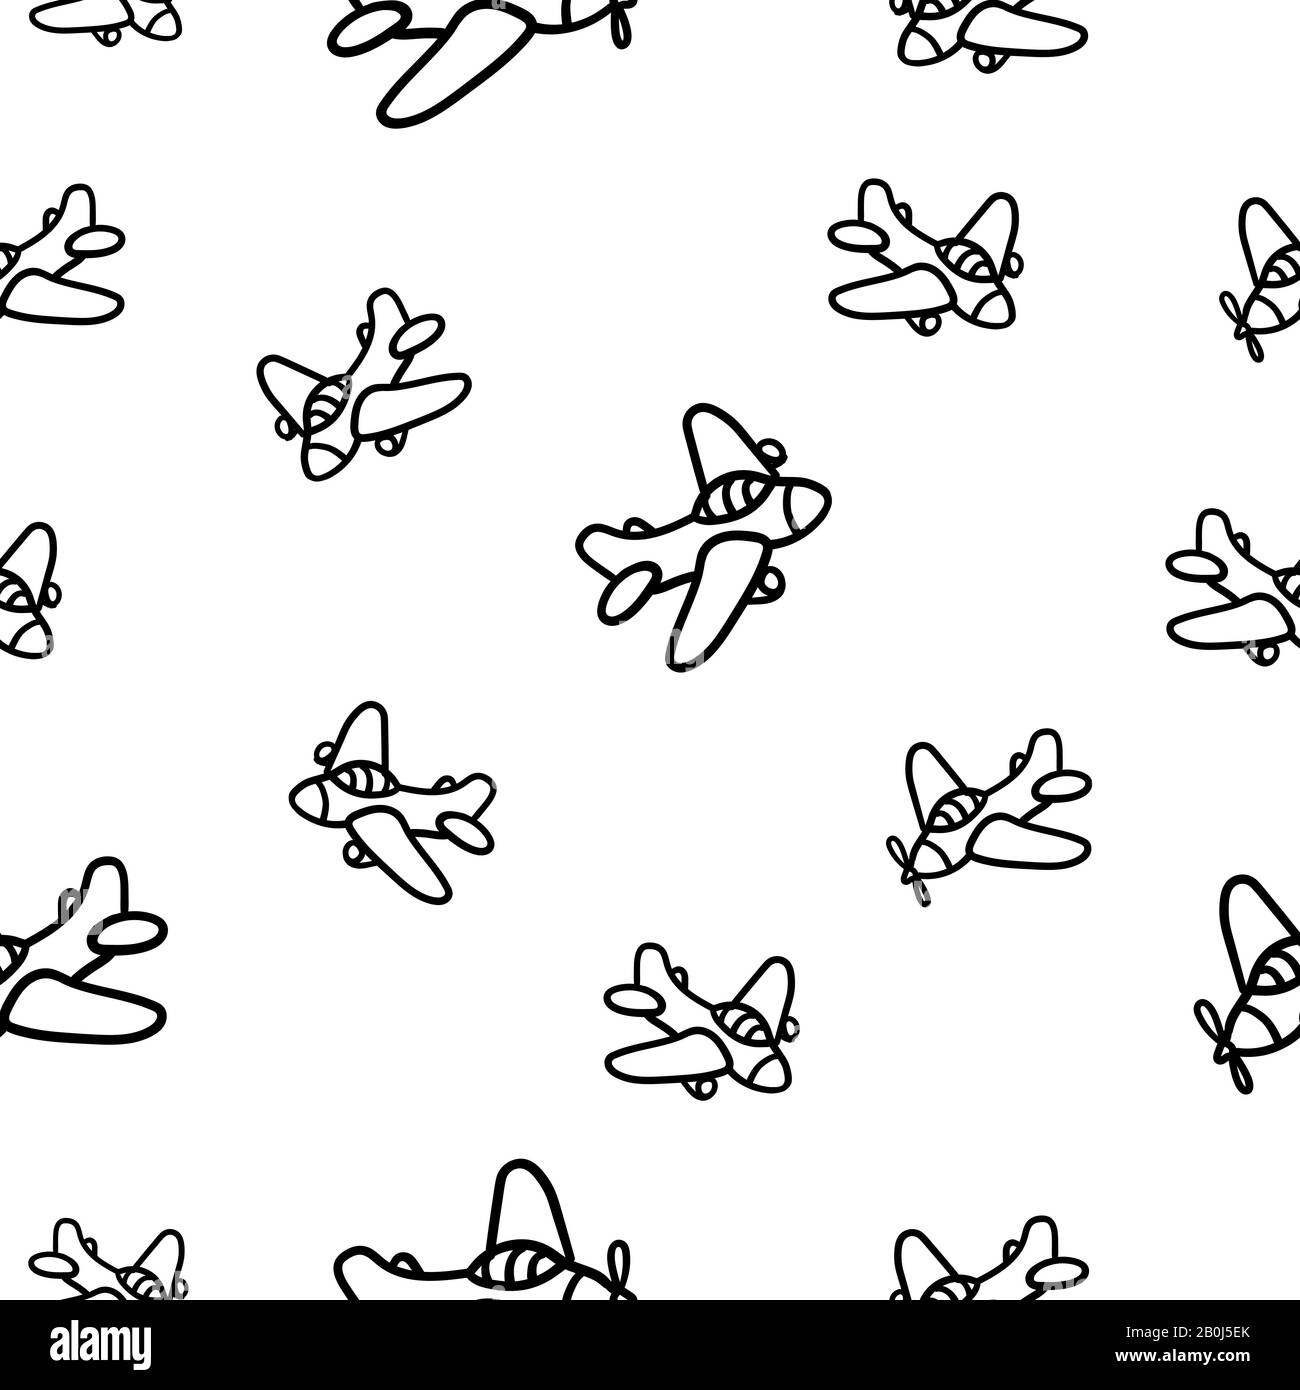 Fondos de pantalla de aviones Imágenes de stock en blanco y negro - Alamy